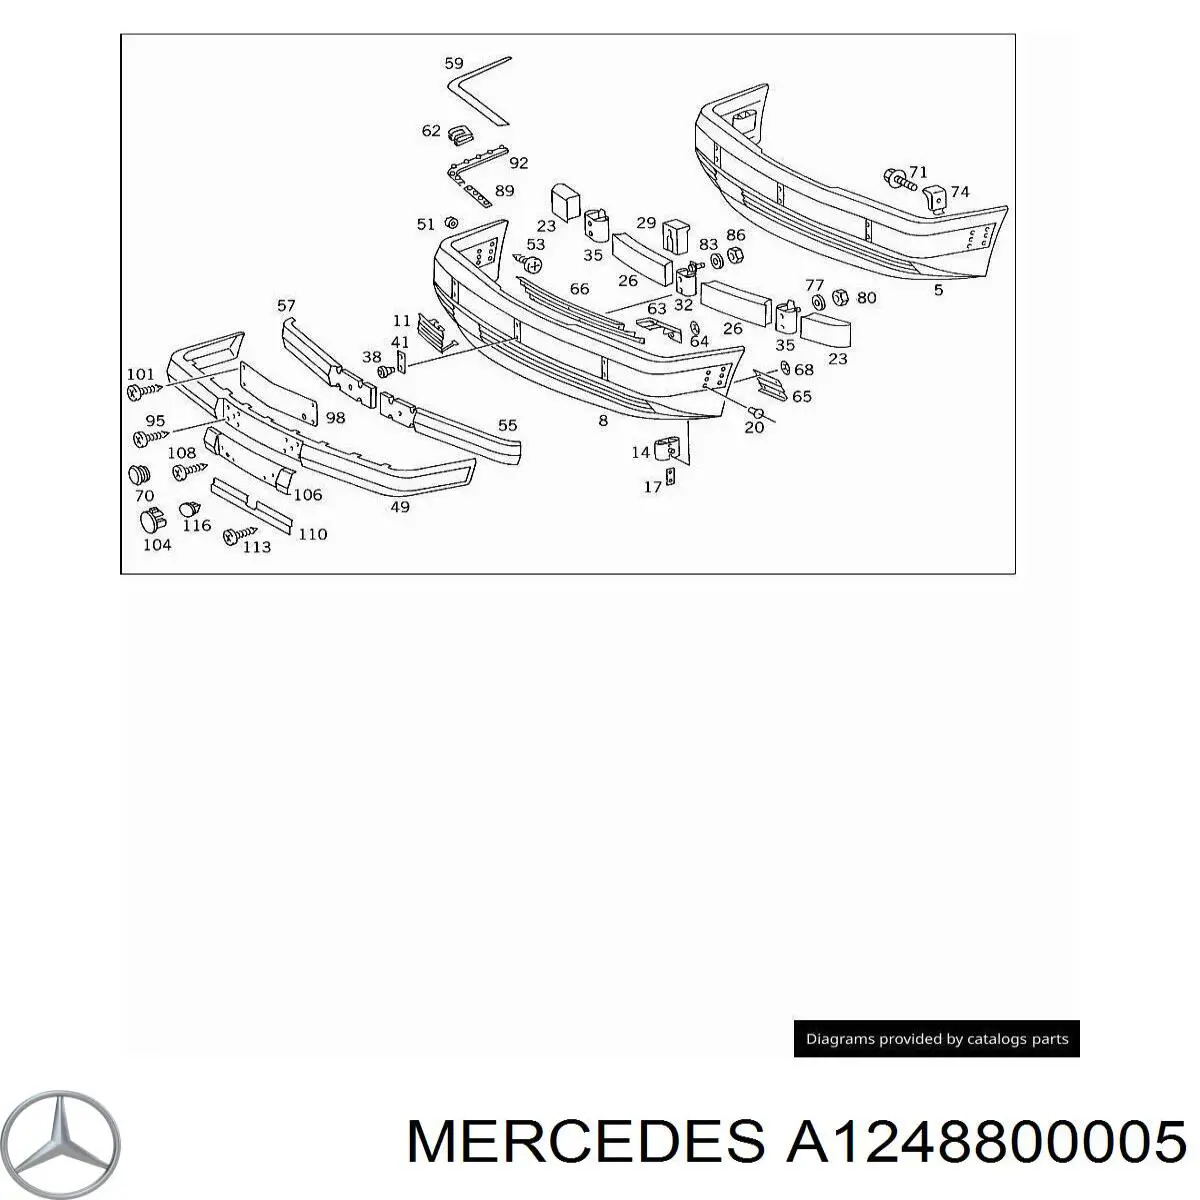 Tapa cubre gancho de remolque para parachoques delantera para Mercedes E (A124)